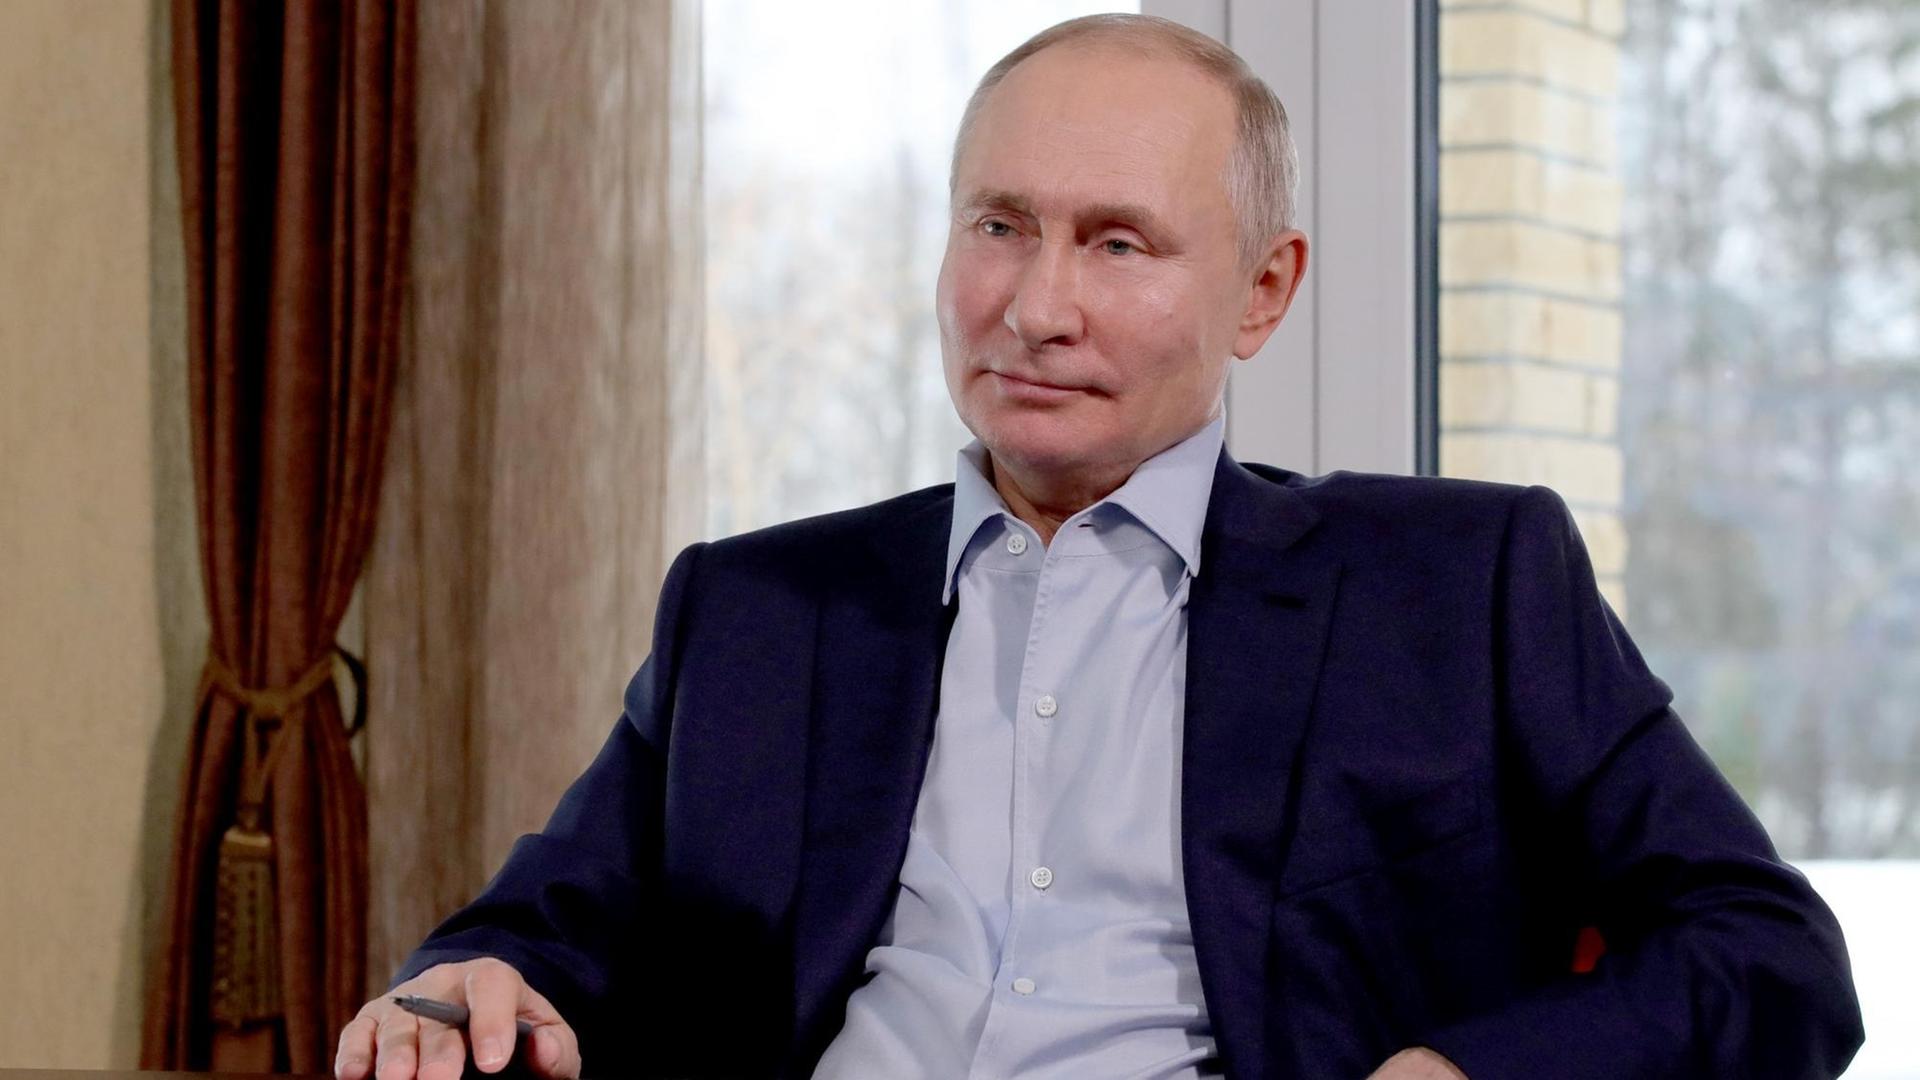 Wladimir Putin, Präsident von dem Land Russland, sitzt in einem Stuhl.